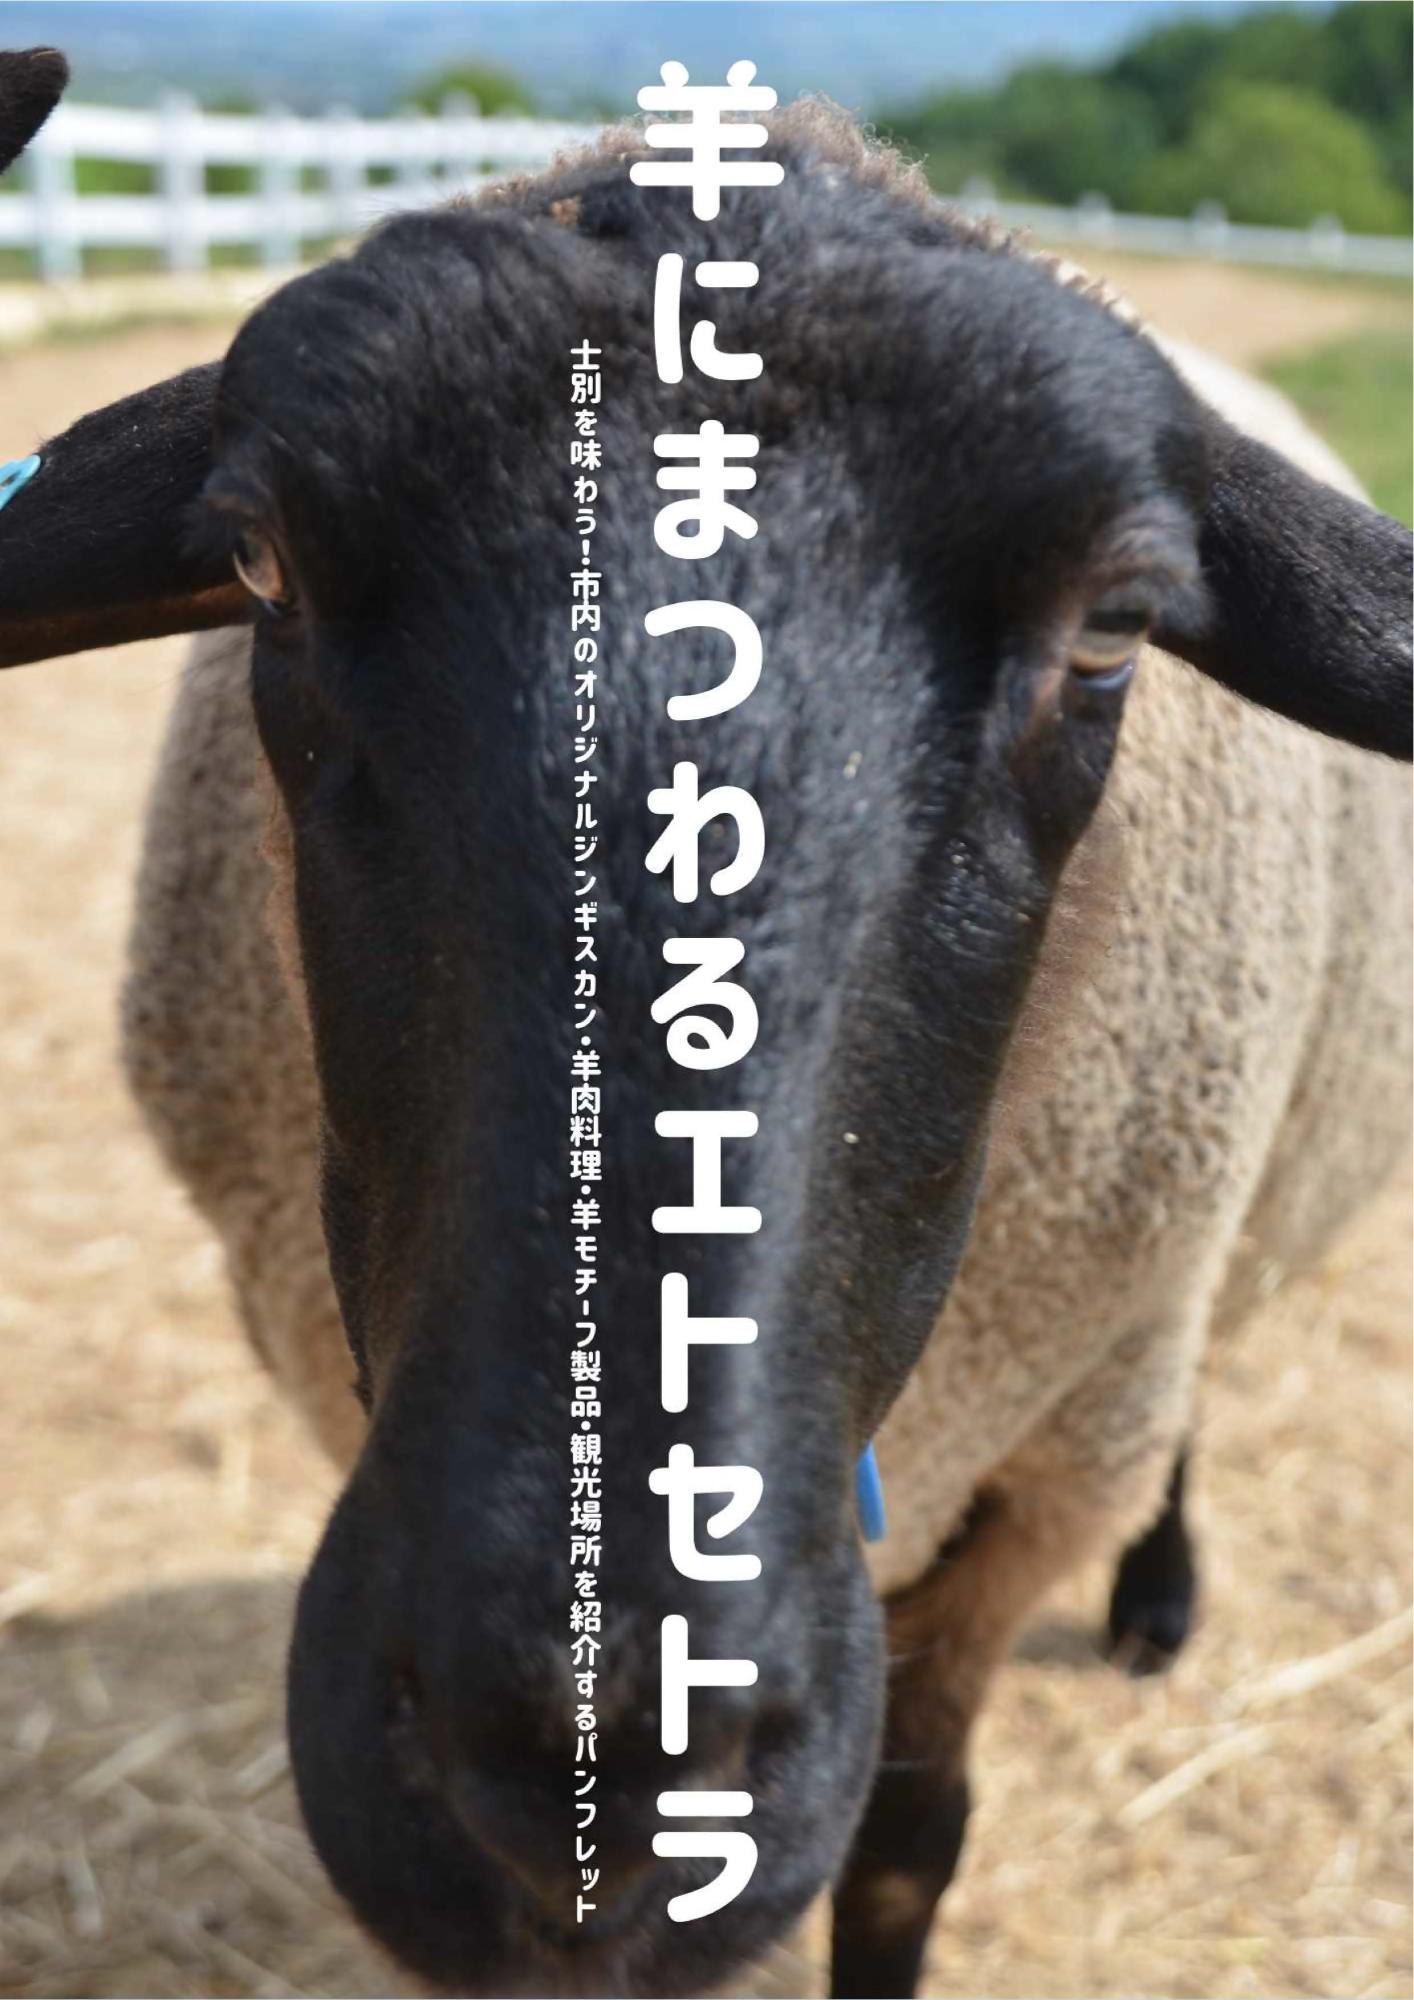 羊にまつわるエトセトラのパンフレット画像